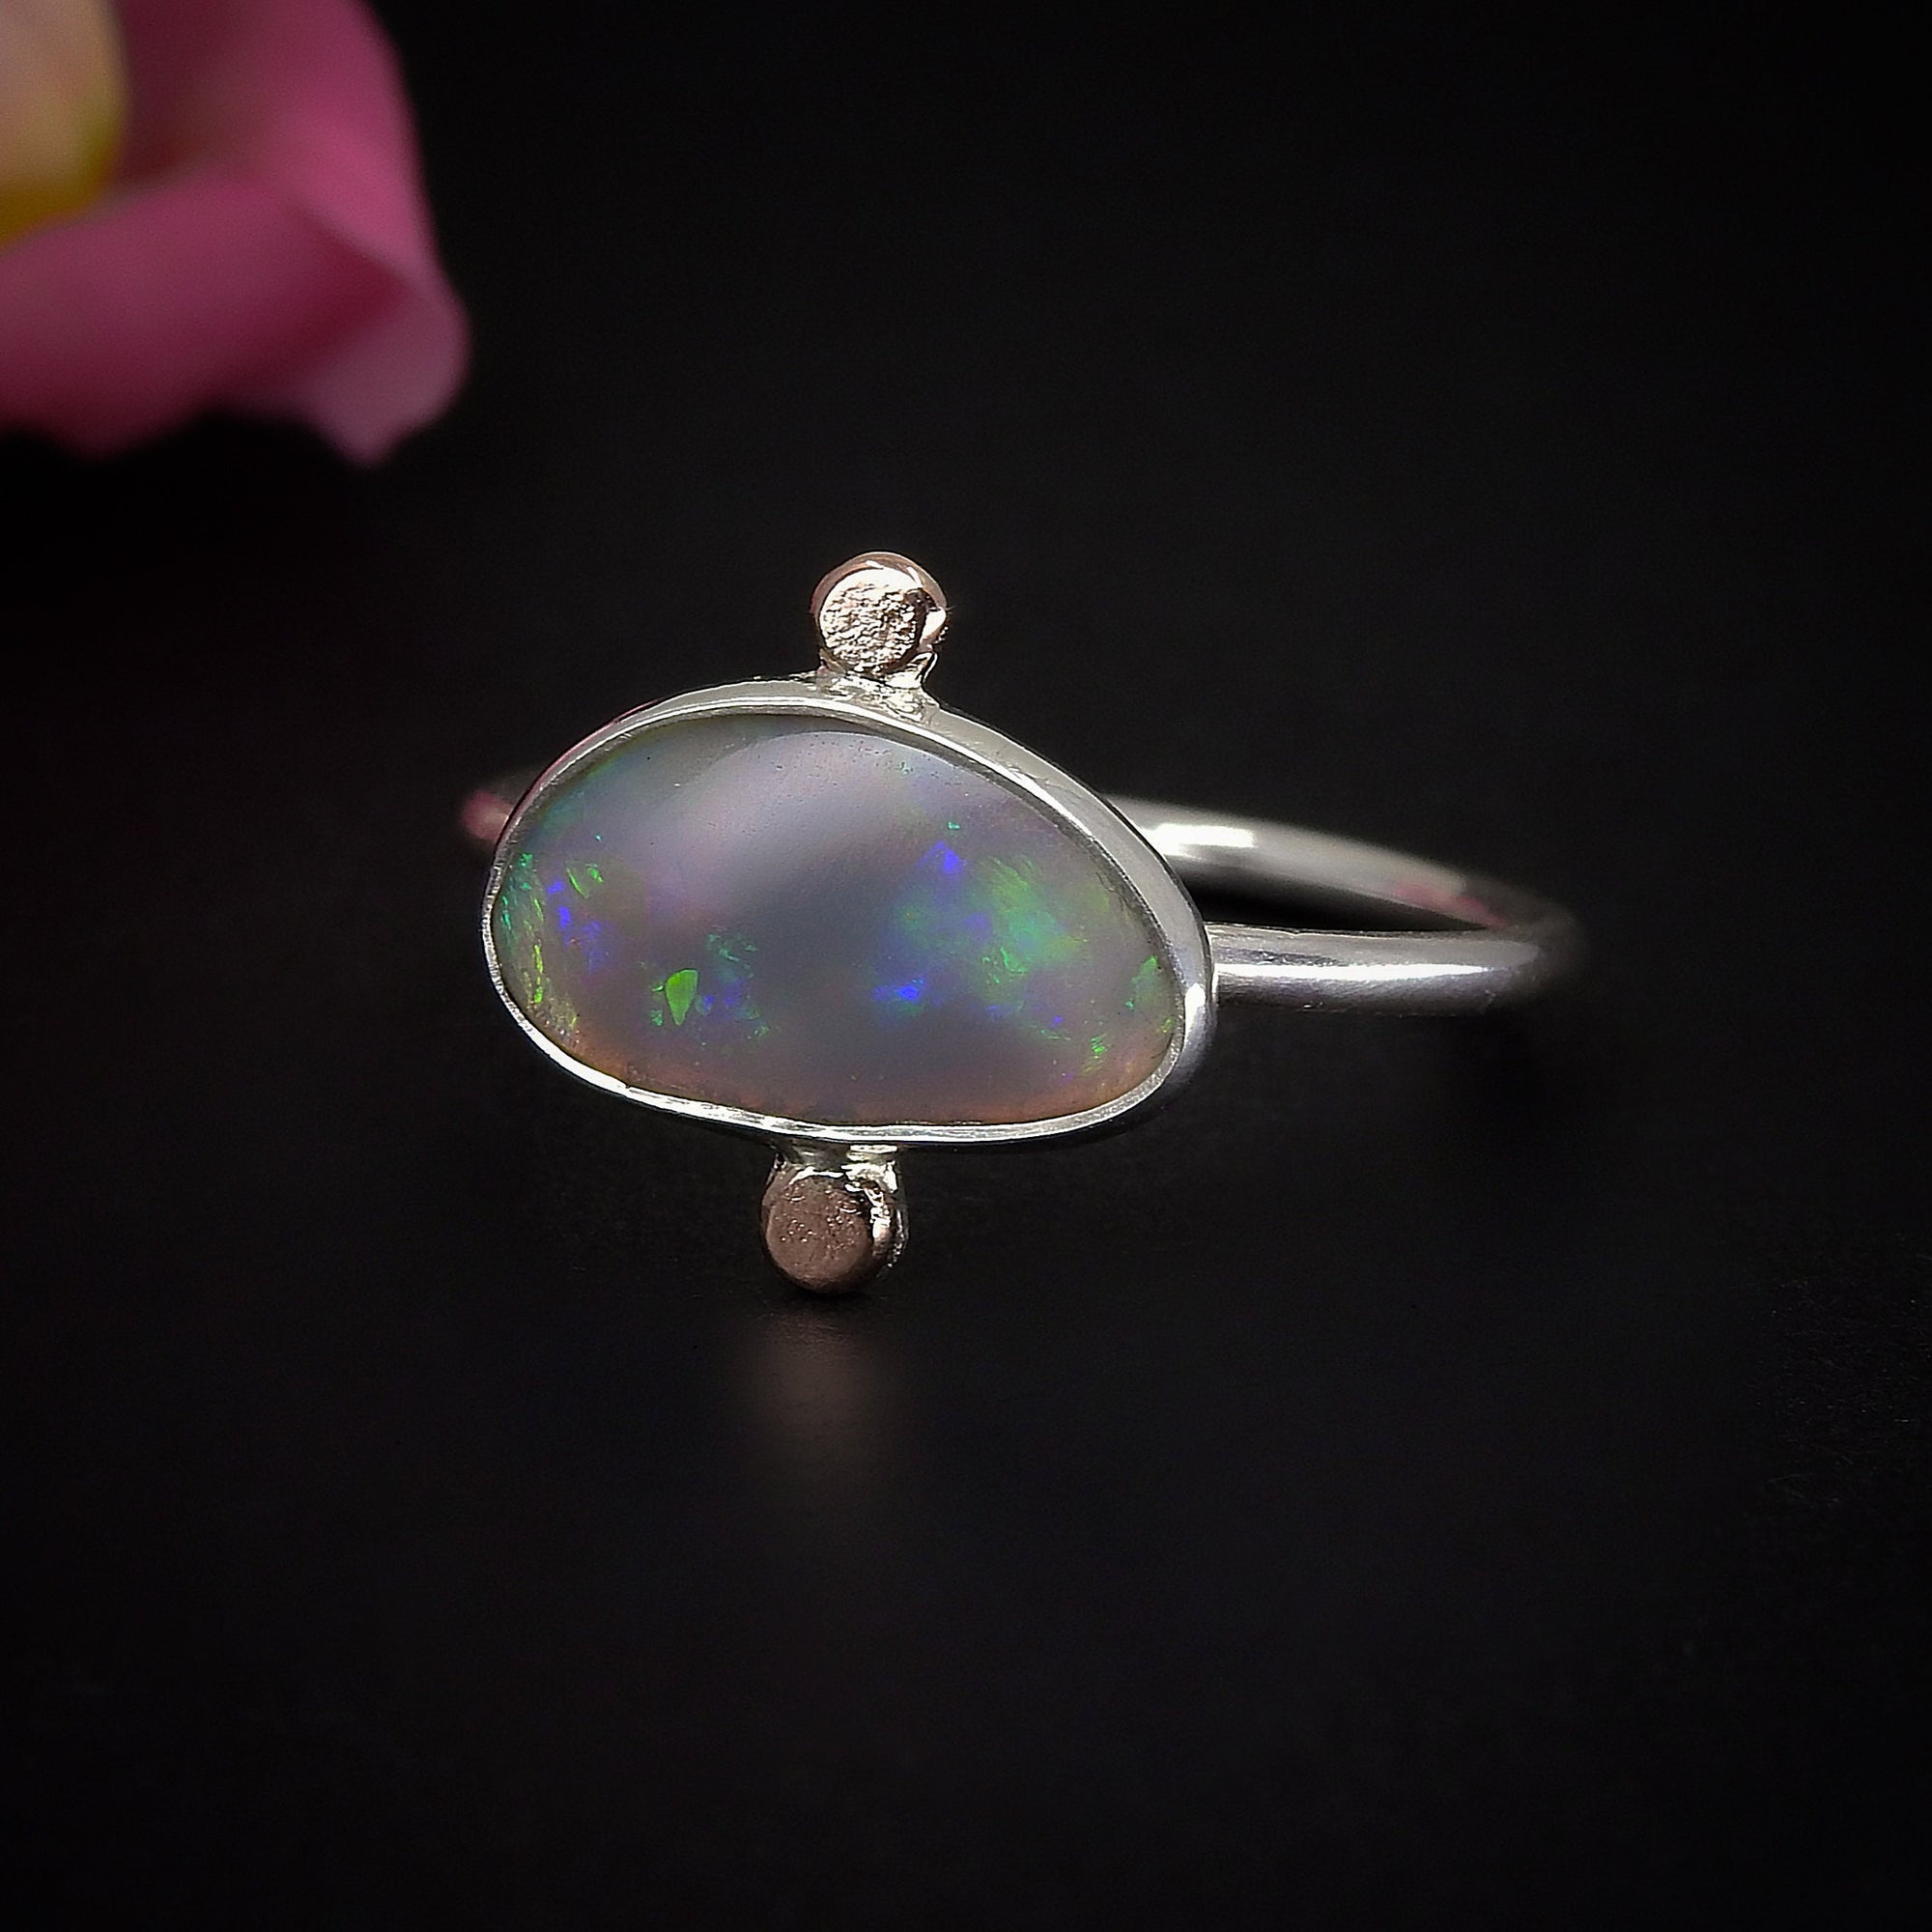 Australian Crystal Opal Ring - Size 9 1/2 